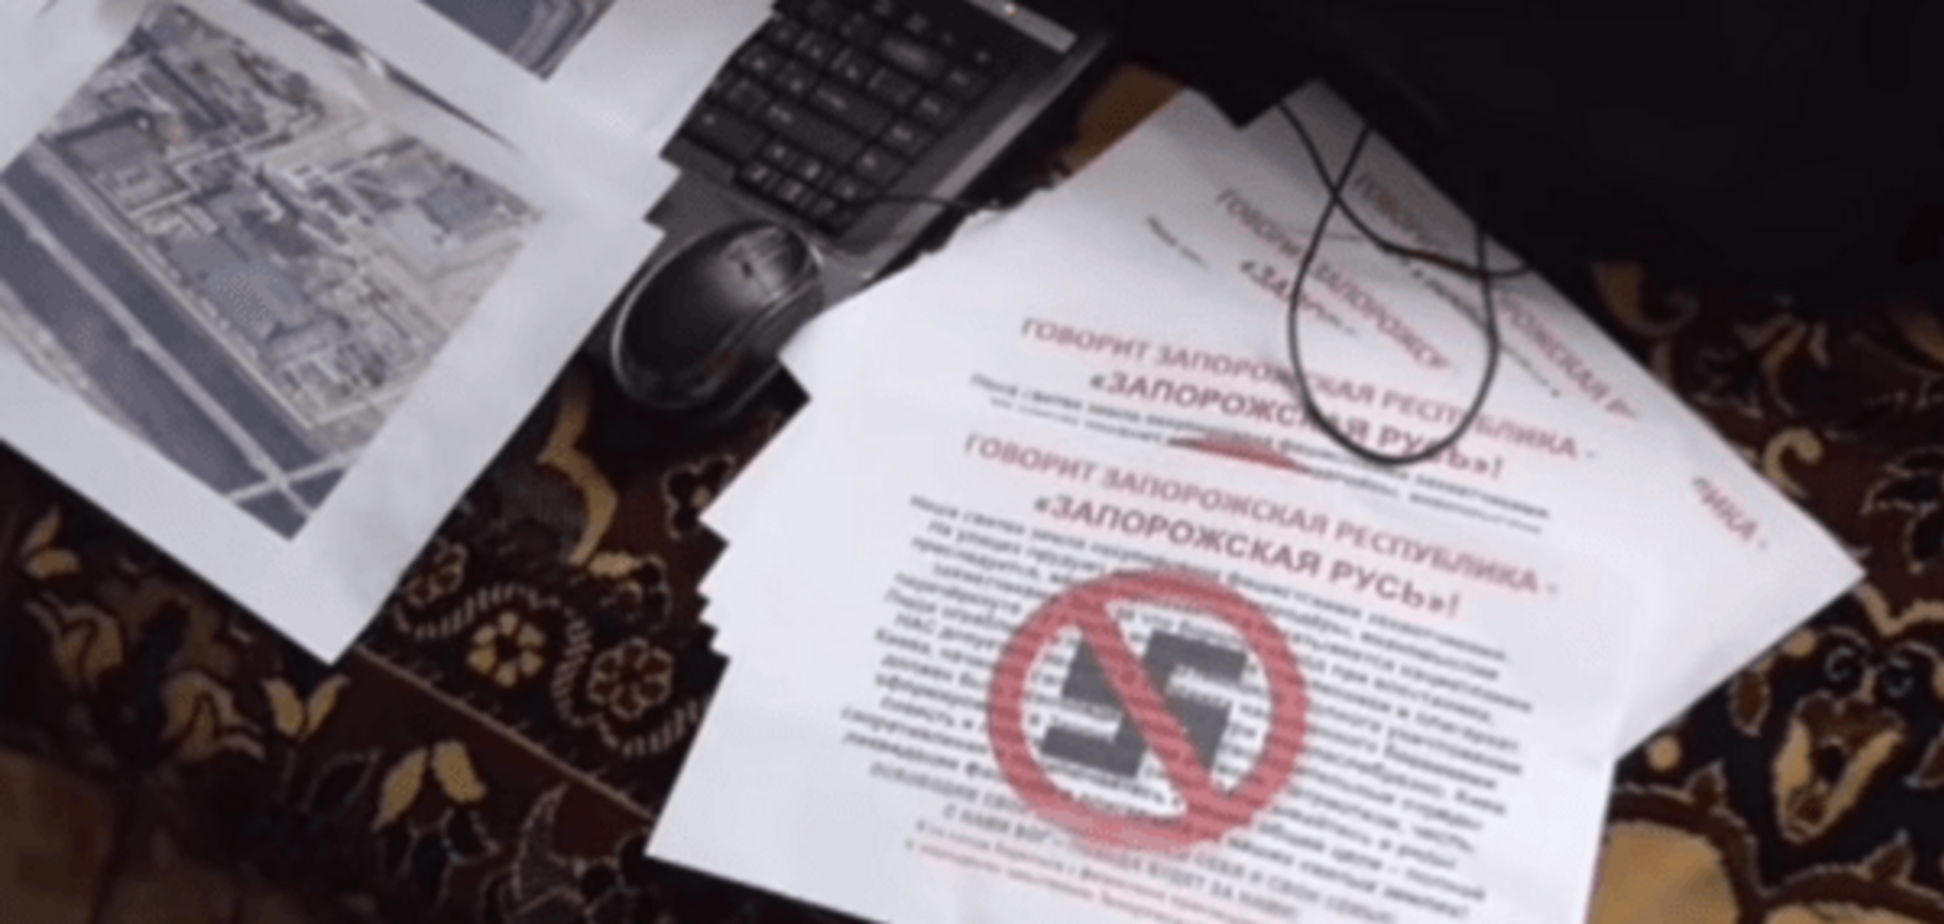 Напрасно прятались: в Запорожье разоблачили группу шпионов 'ДНР'